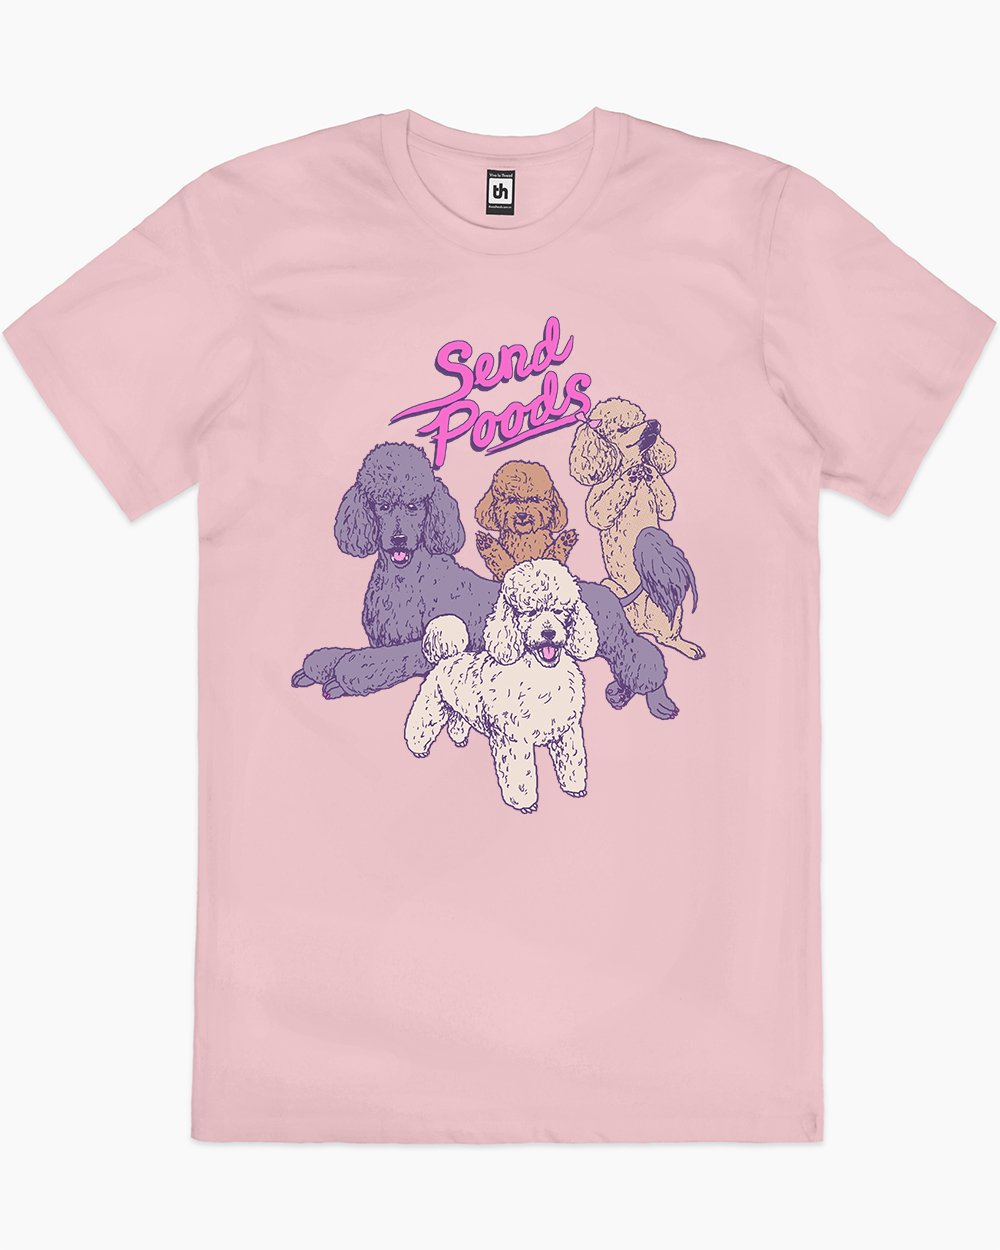 Send Poods T-Shirt Australia Online #colour_pink